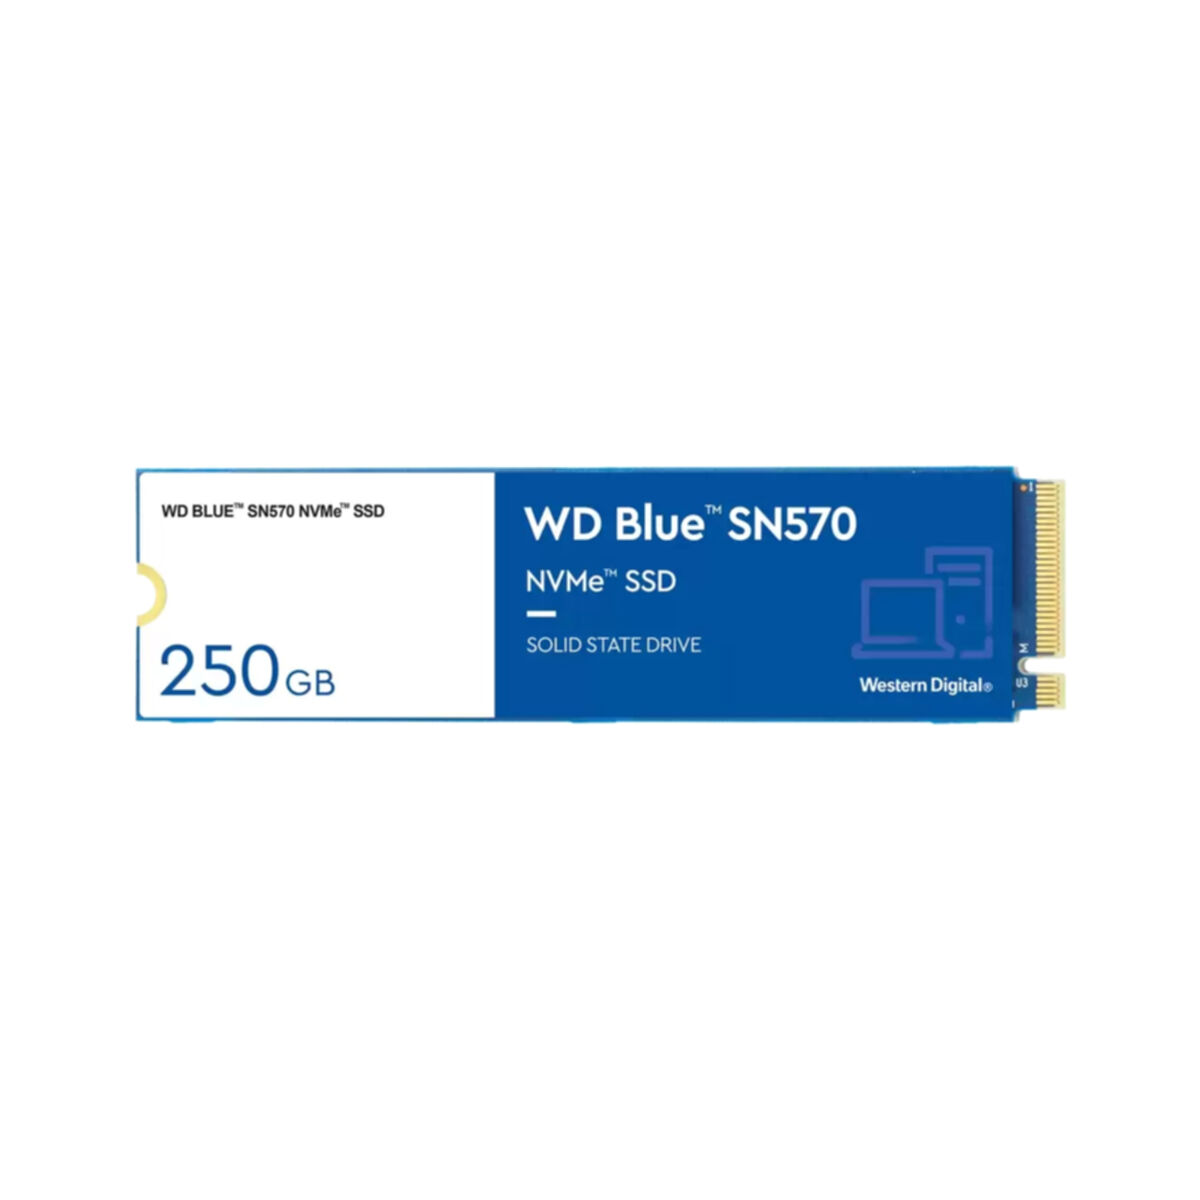 WESTERN DIGITAL WD 250 intern GB, SN570, Blue SSD